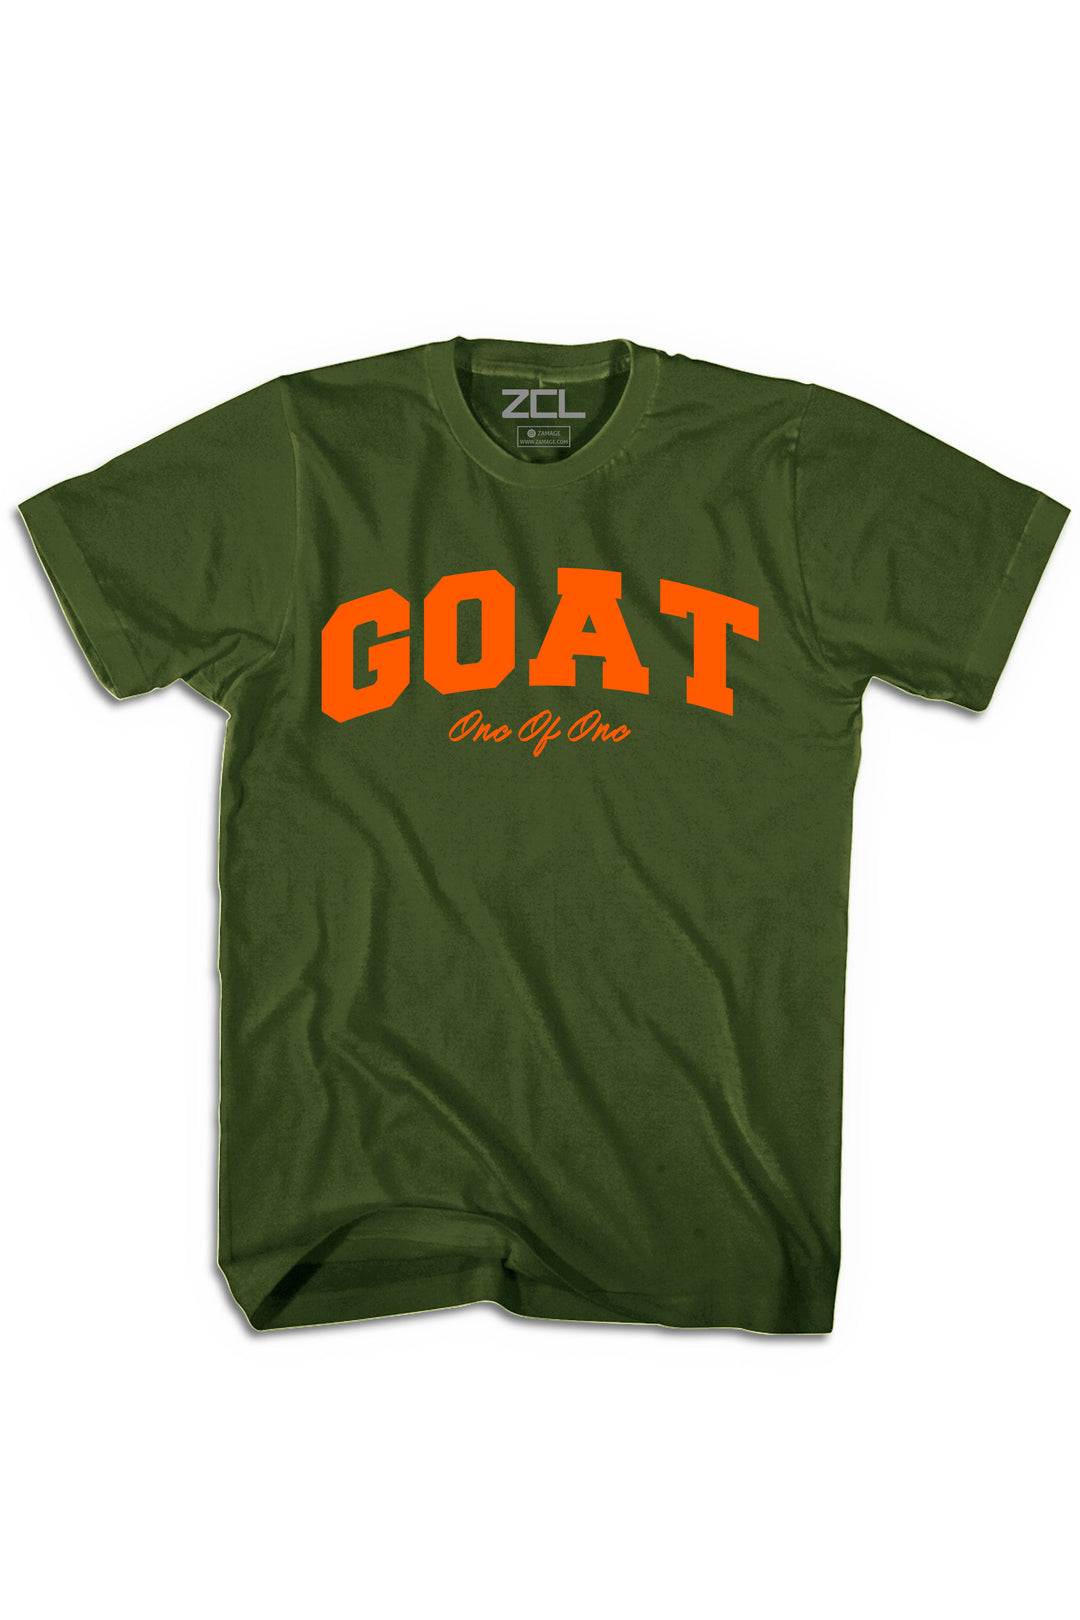 Goat Tee (Orange Logo) - Zamage